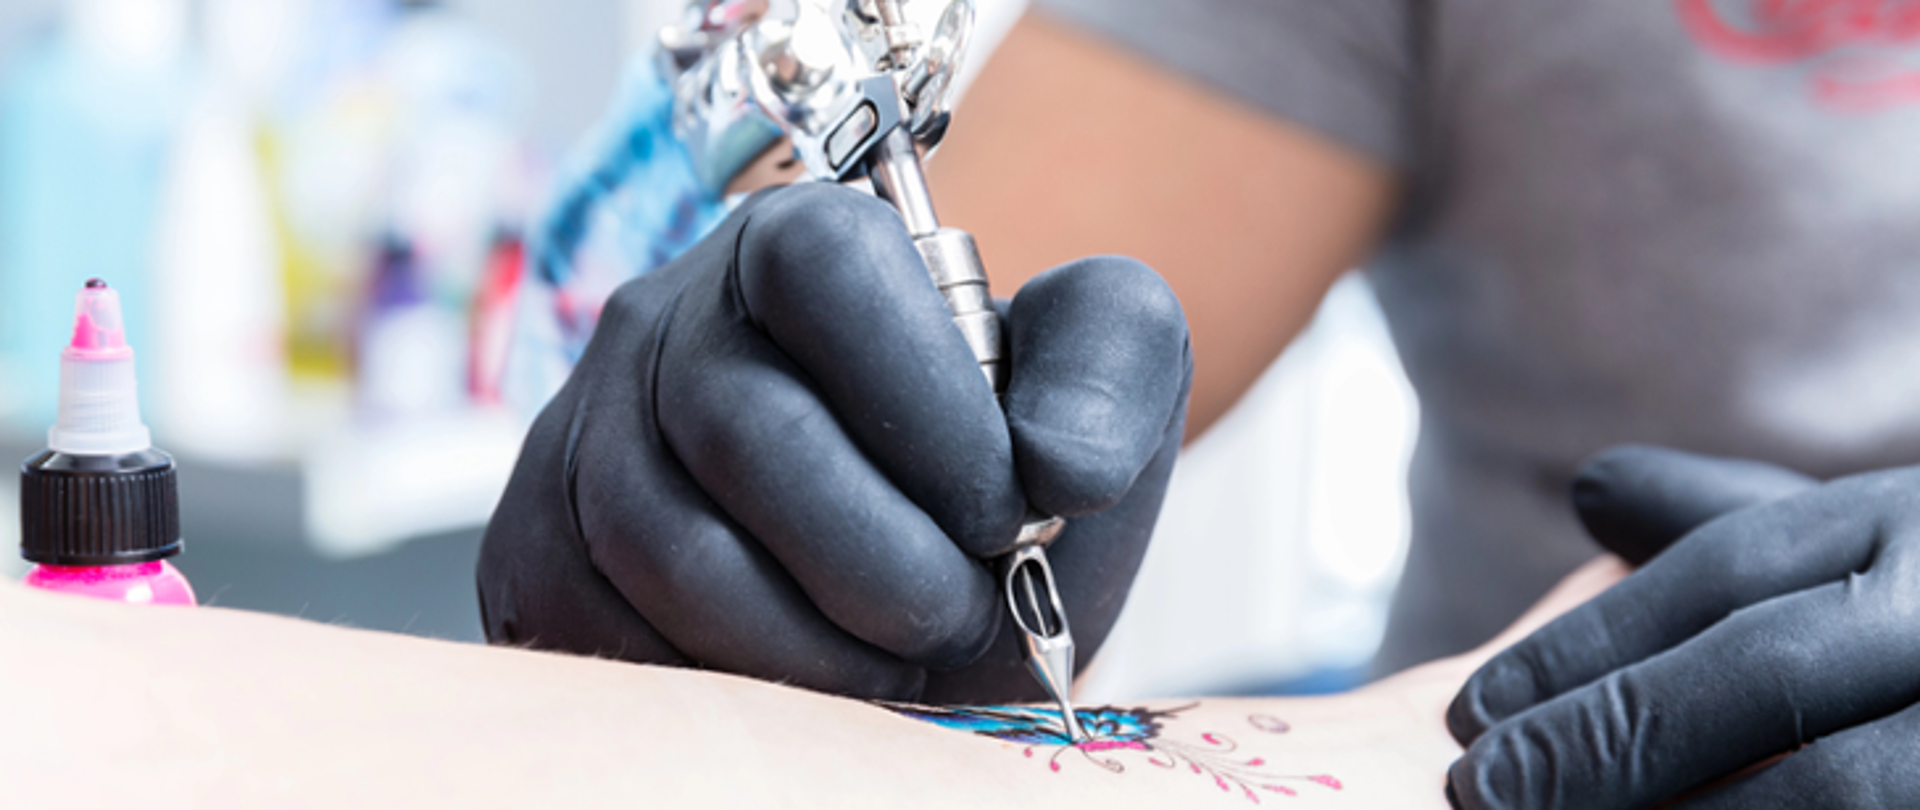 Planujesz wykonać tatuaż? Upewnij się czy stosowany tusz jest bezpieczny